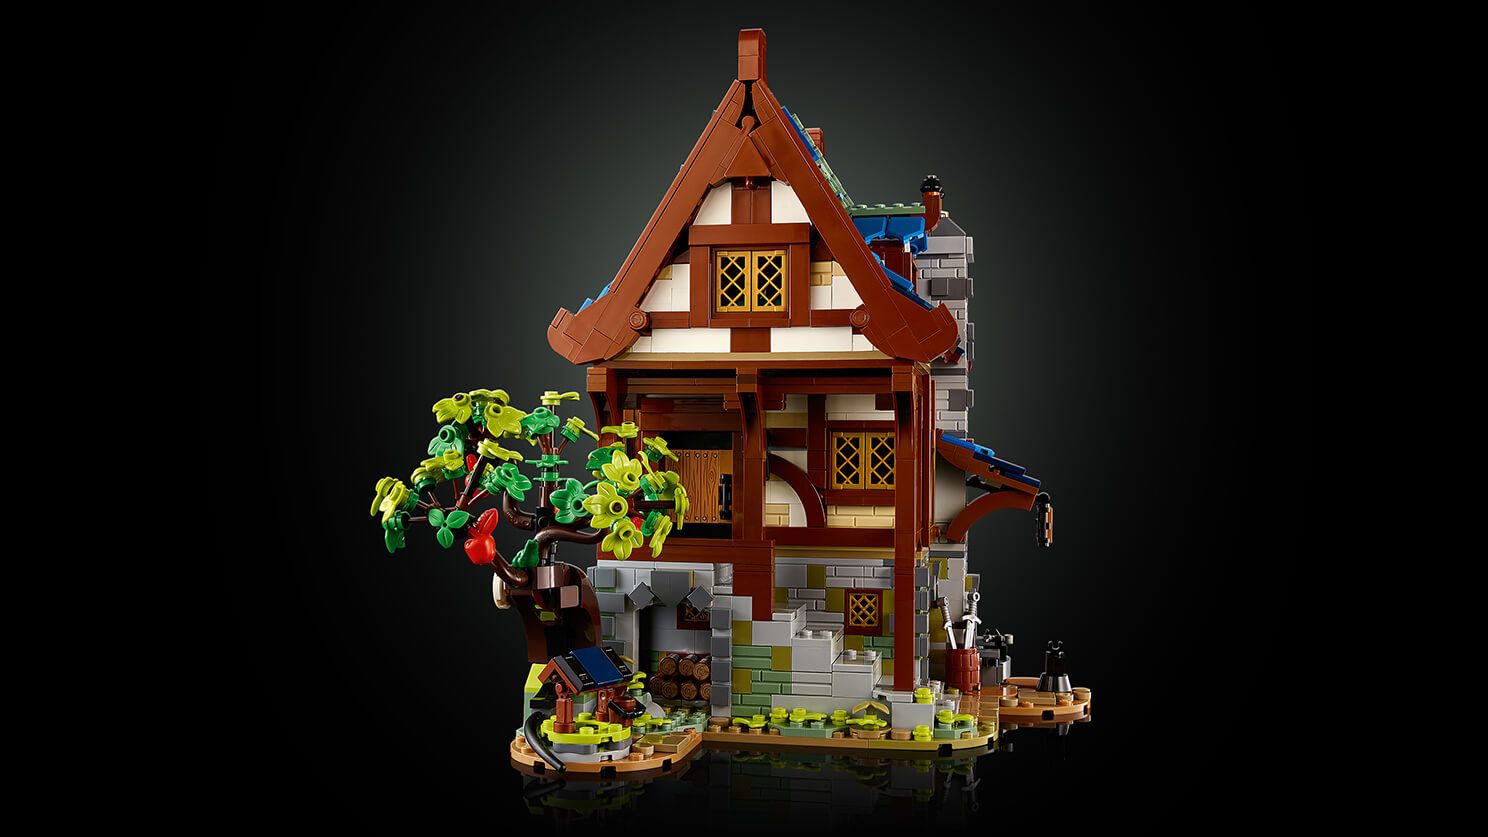 LEGO Ideas 21325 Mittelalterliche Schmiede LEGO_21325_WEB_SEC01_1488.jpg